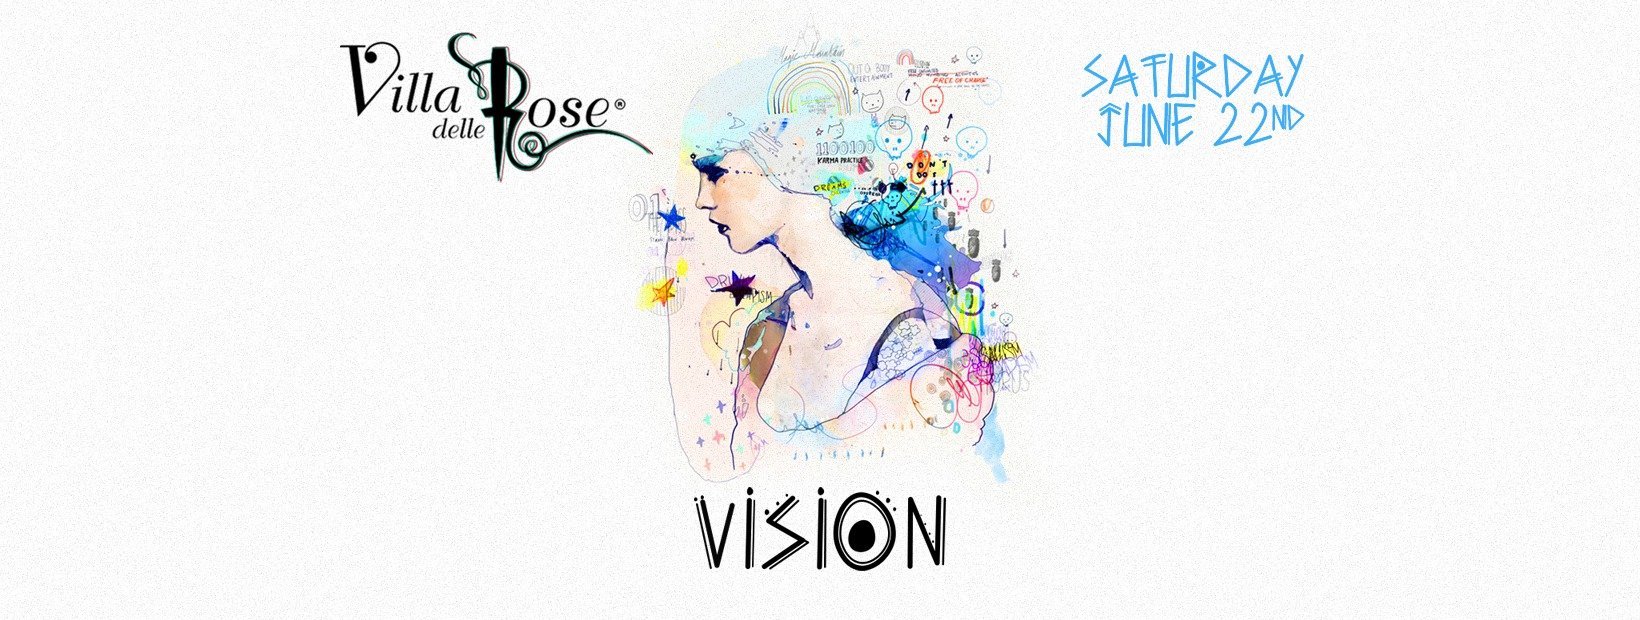 Villa Delle Rose Sabato 22 Giugno 2019